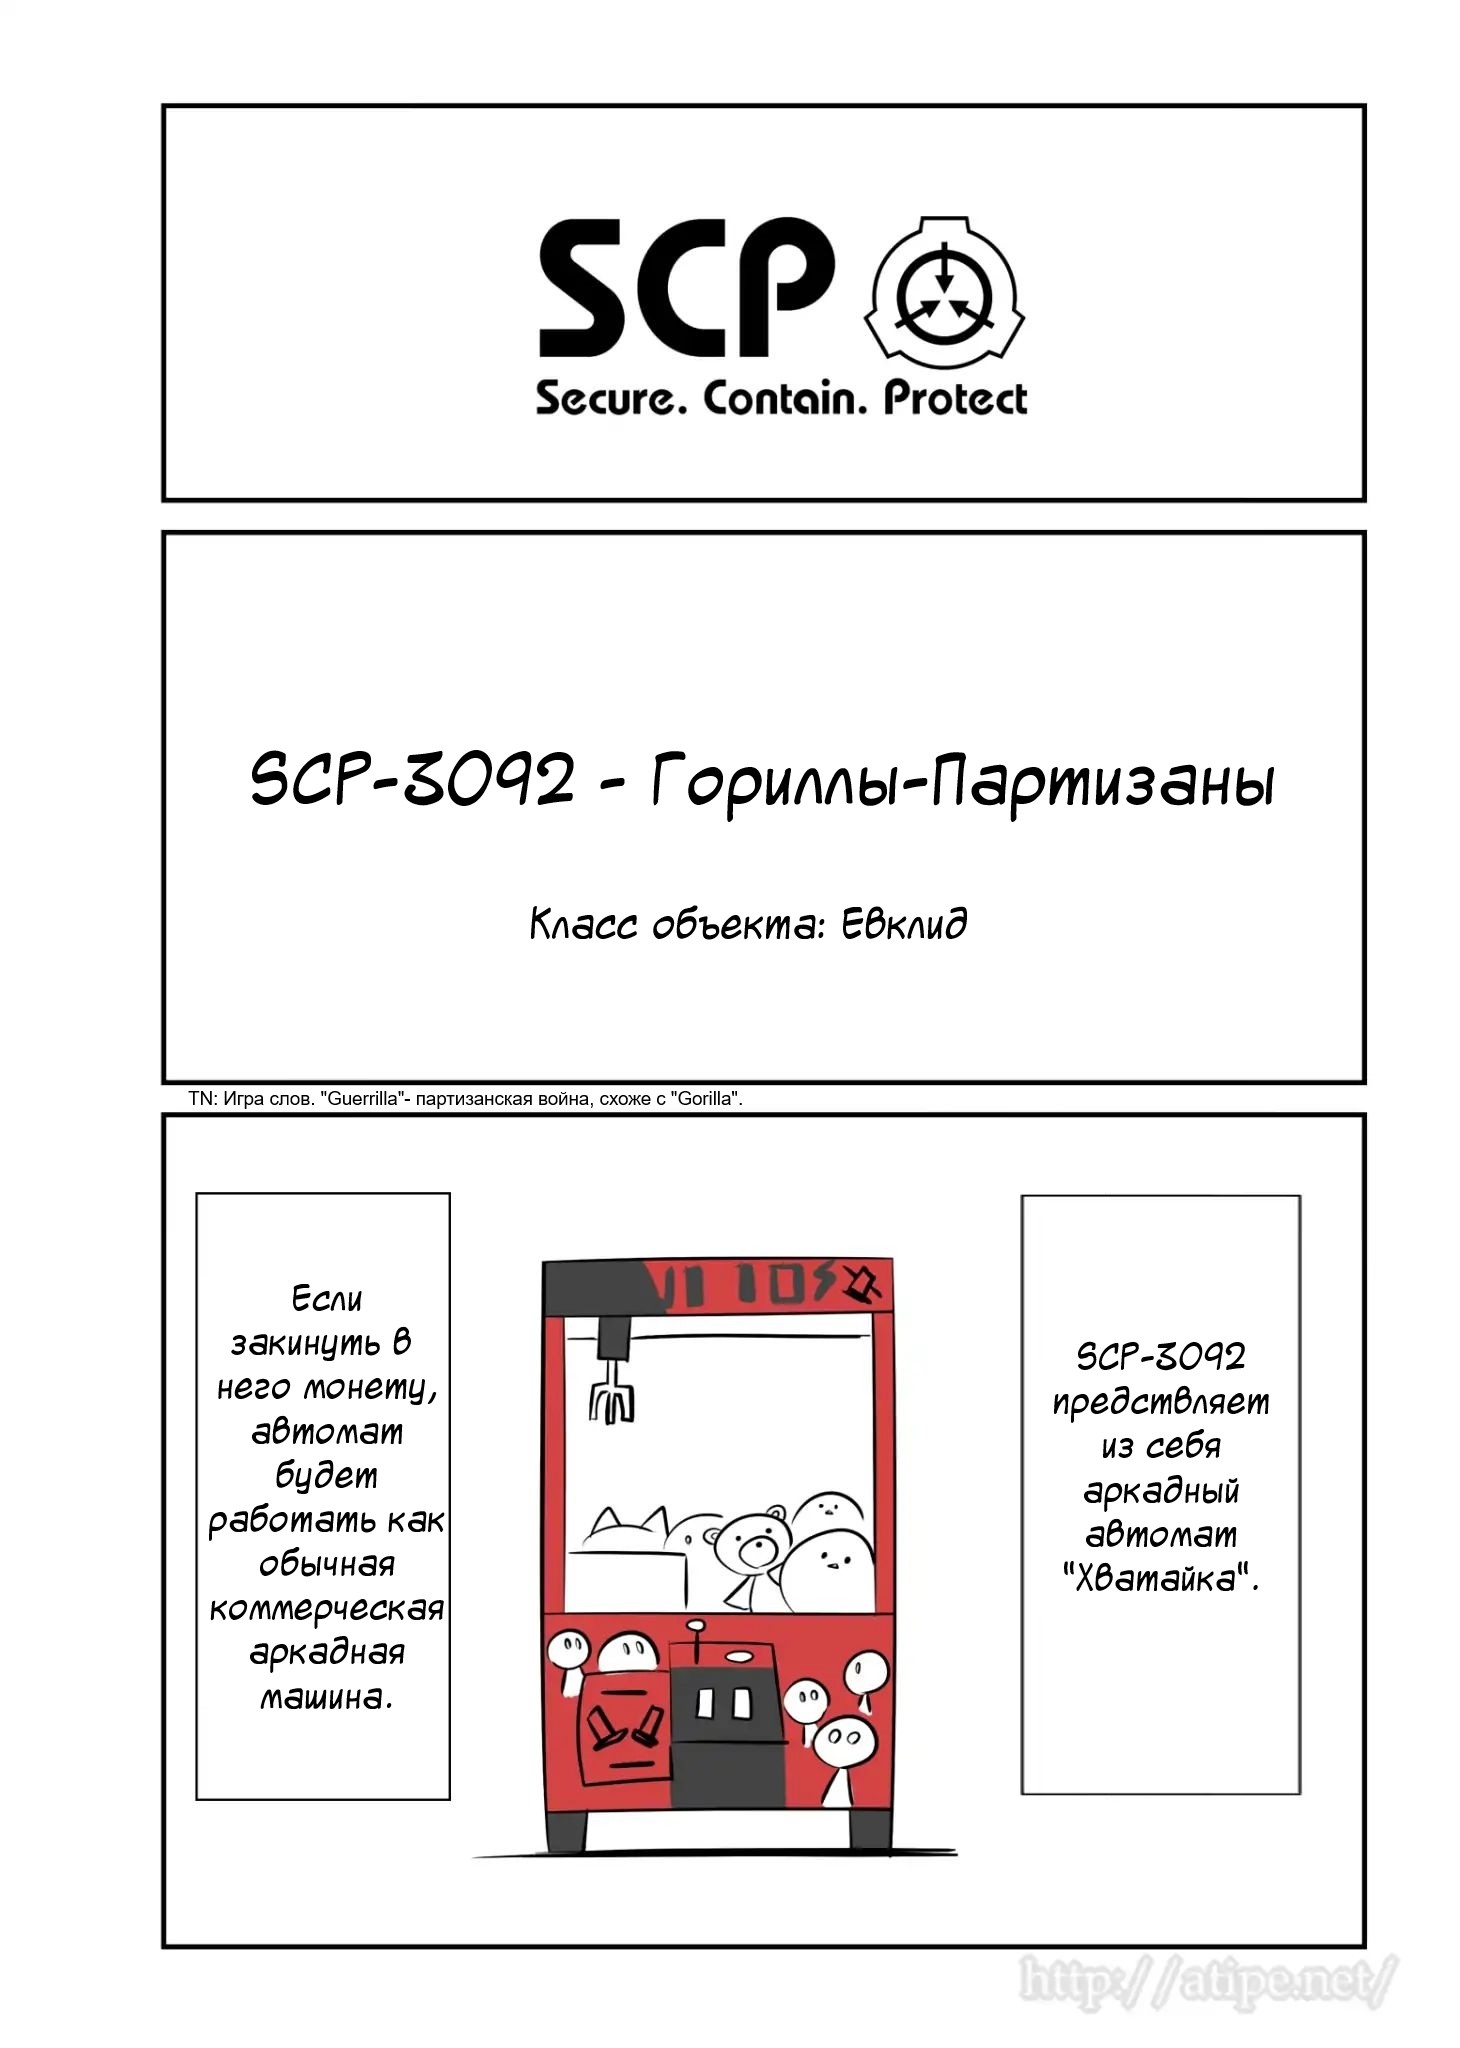 Упрощенный SCP 1 - 52 SCP-3092